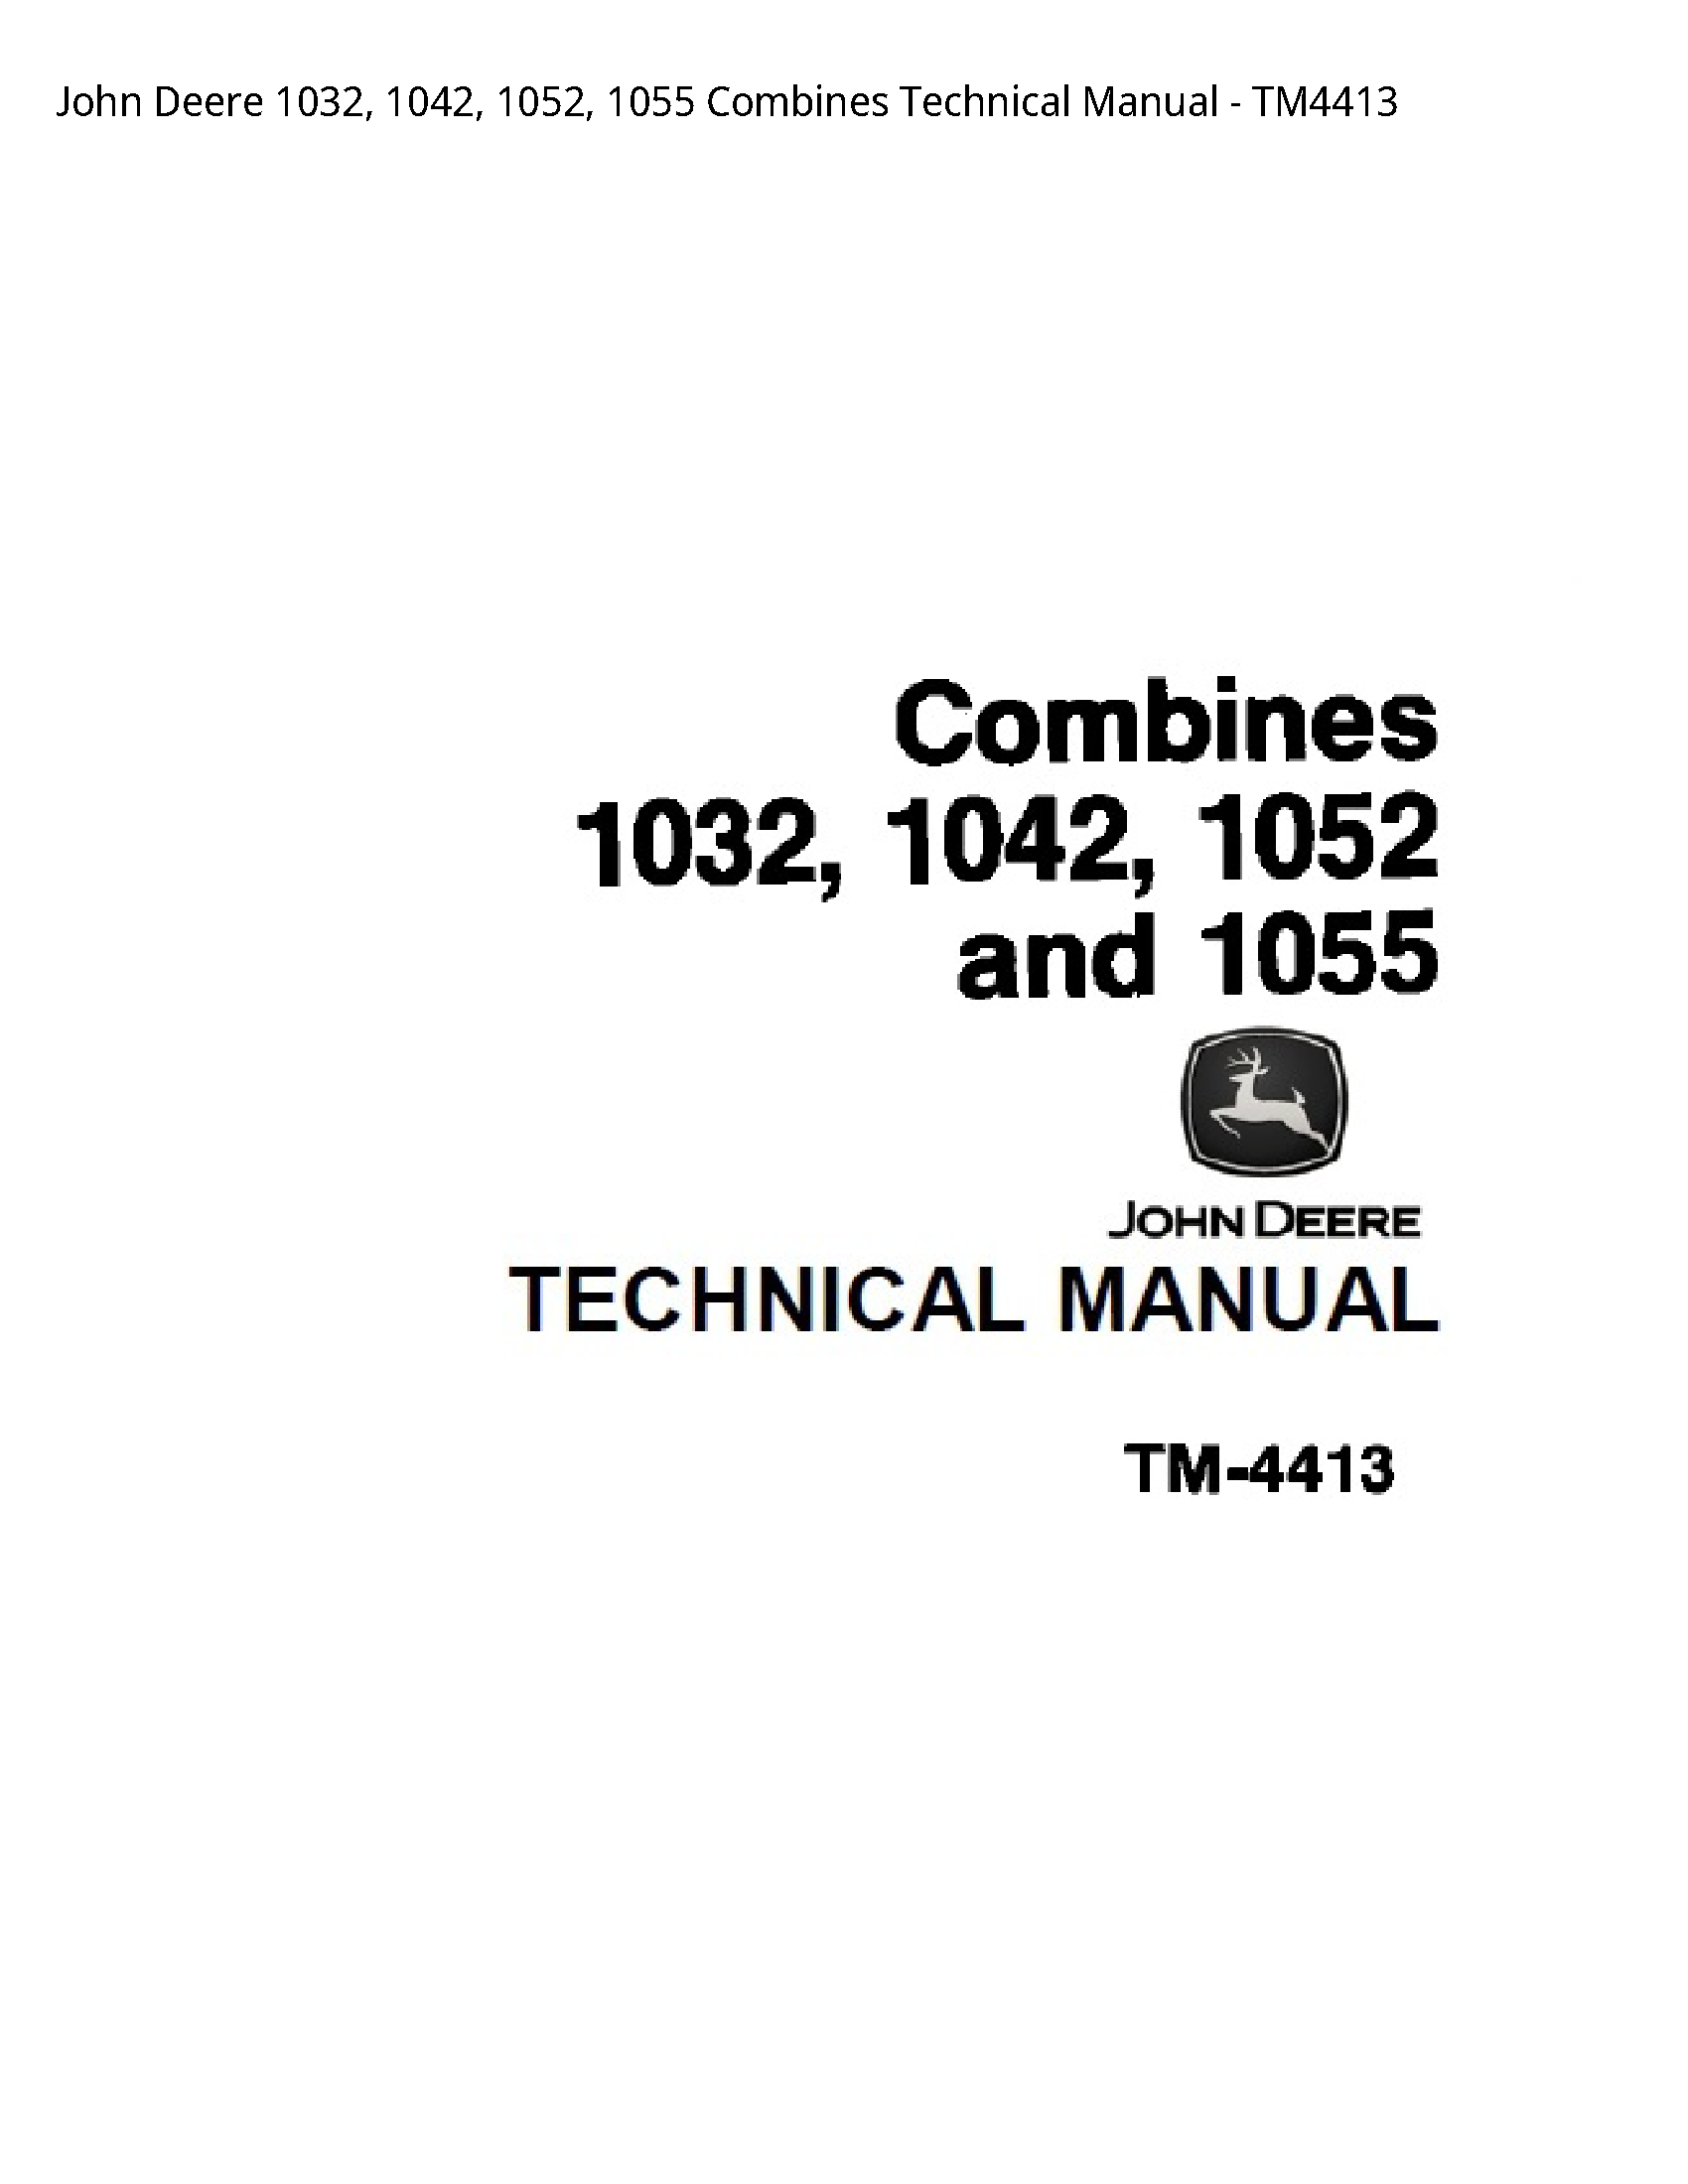 John Deere 1032 Combines Technical manual